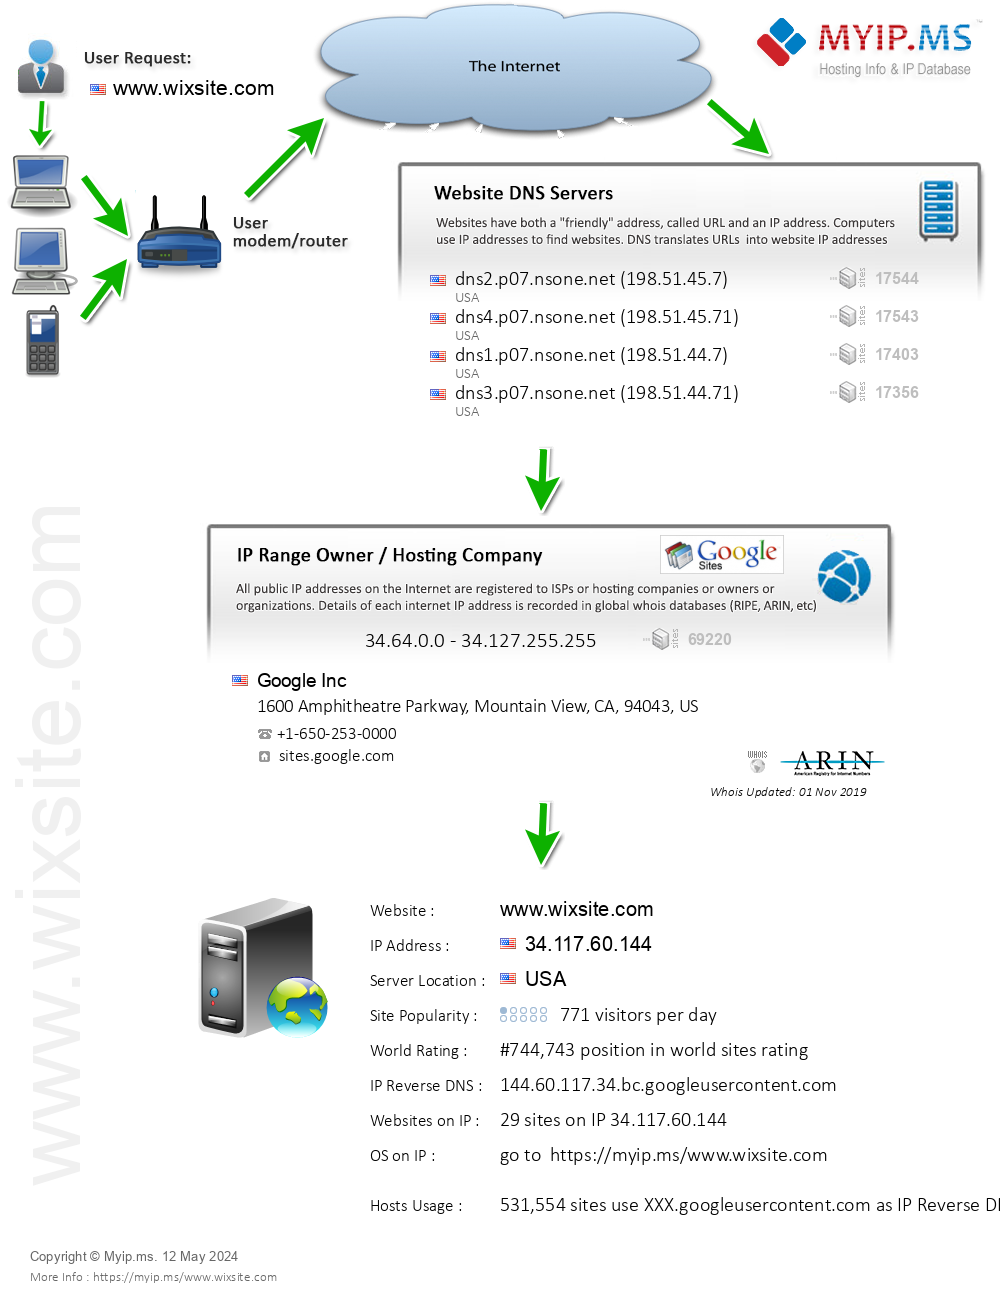 Wixsite.com - Website Hosting Visual IP Diagram